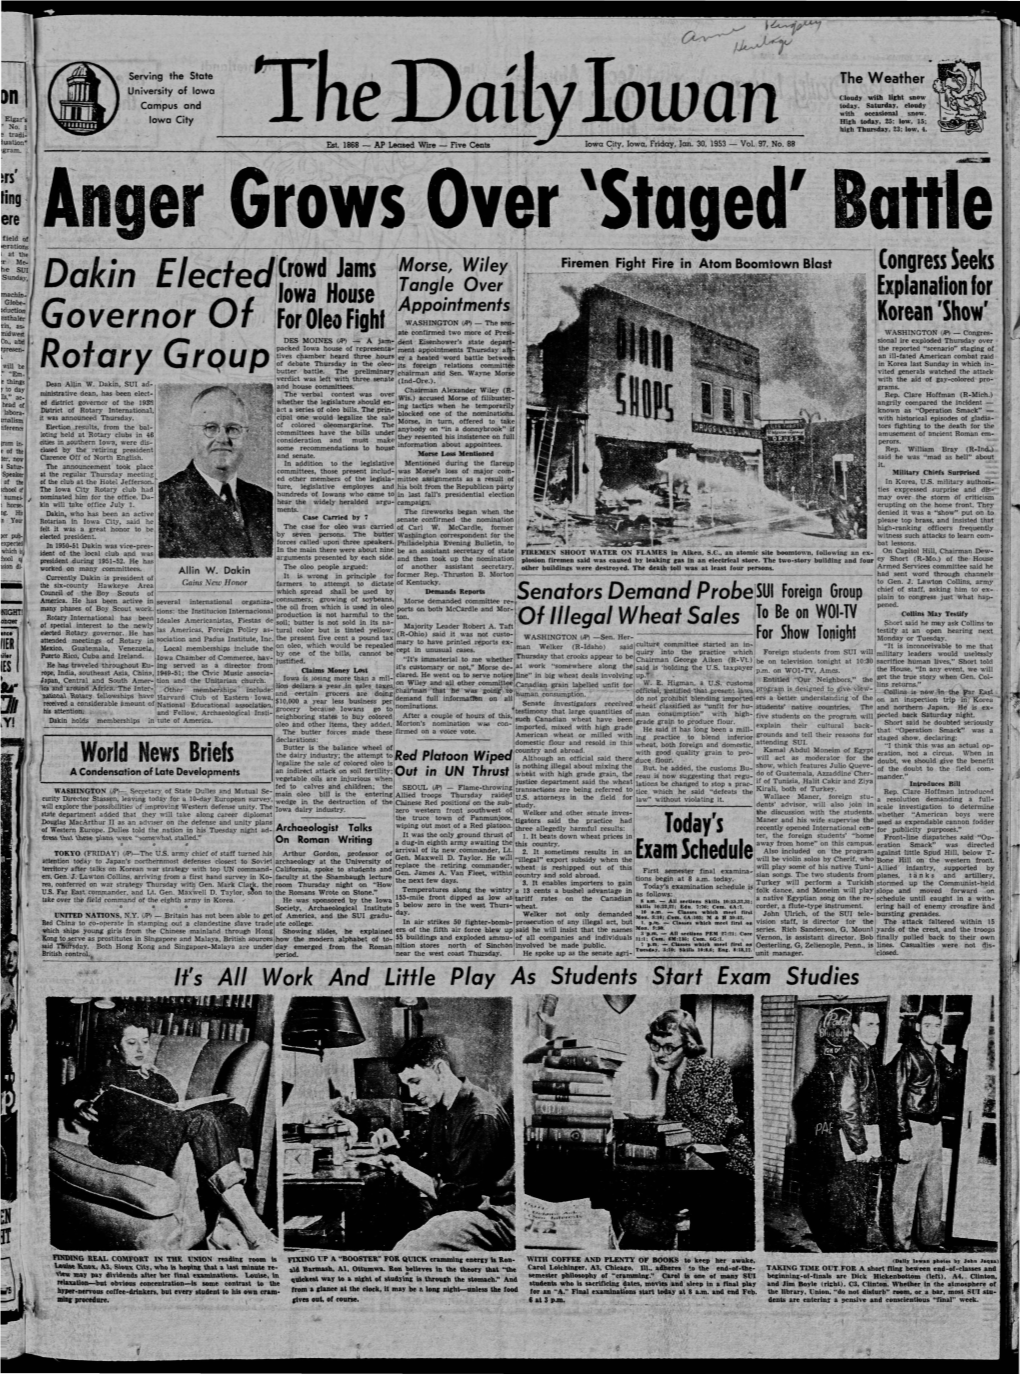 Daily Iowan (Iowa City, Iowa), 1953-01-30